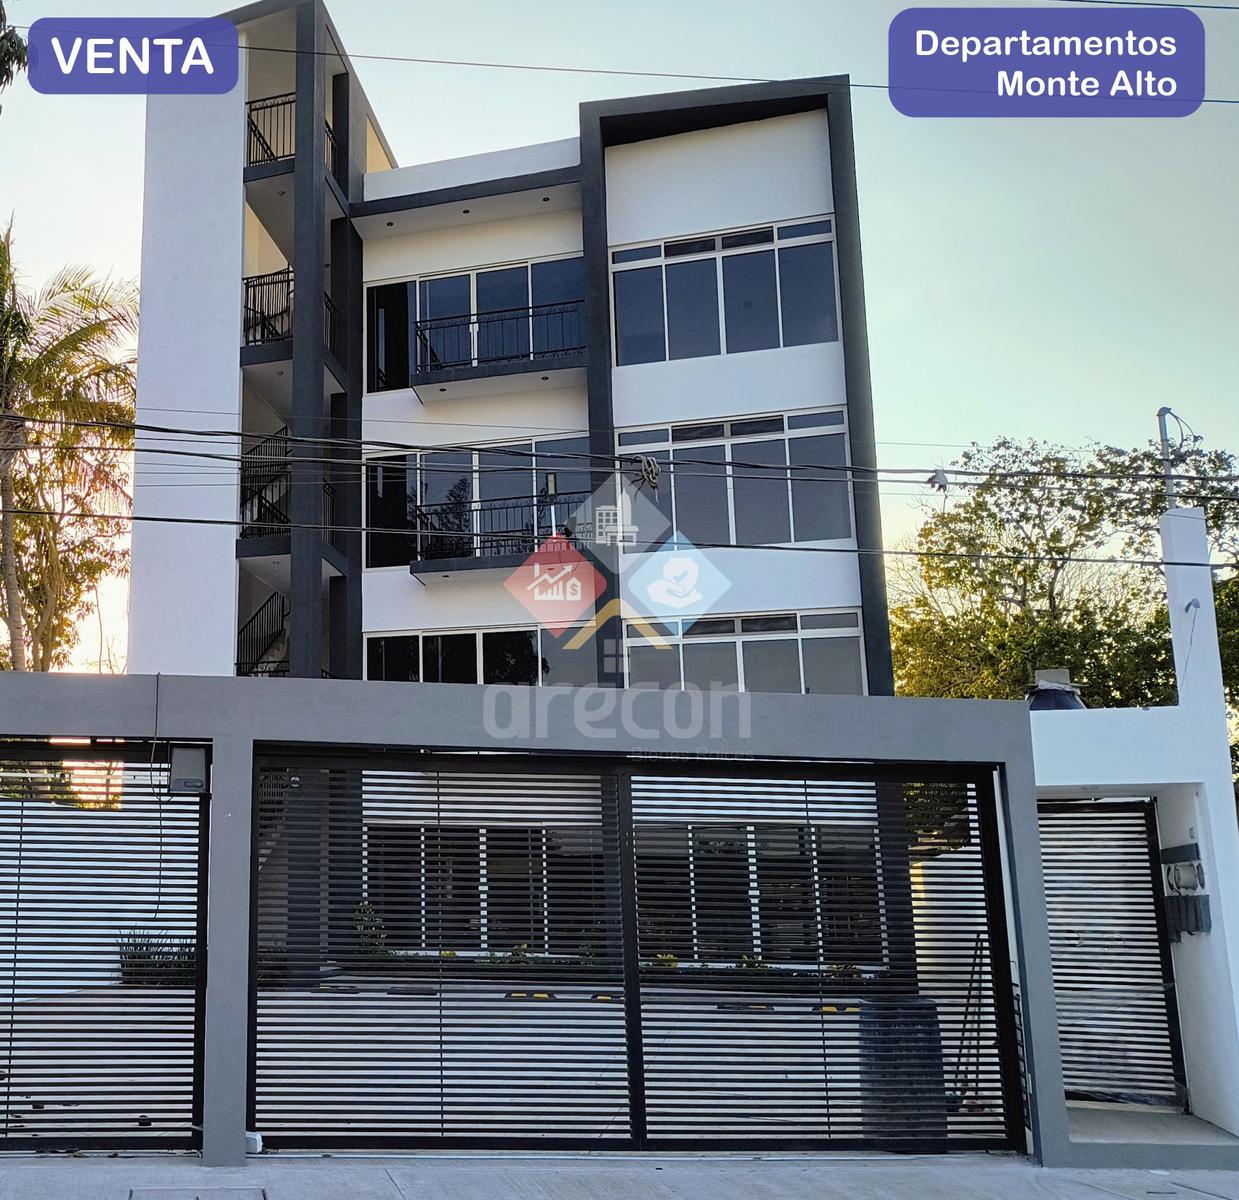 Departamento en Venta en Monte Alto Altamira, cerca de la Retama